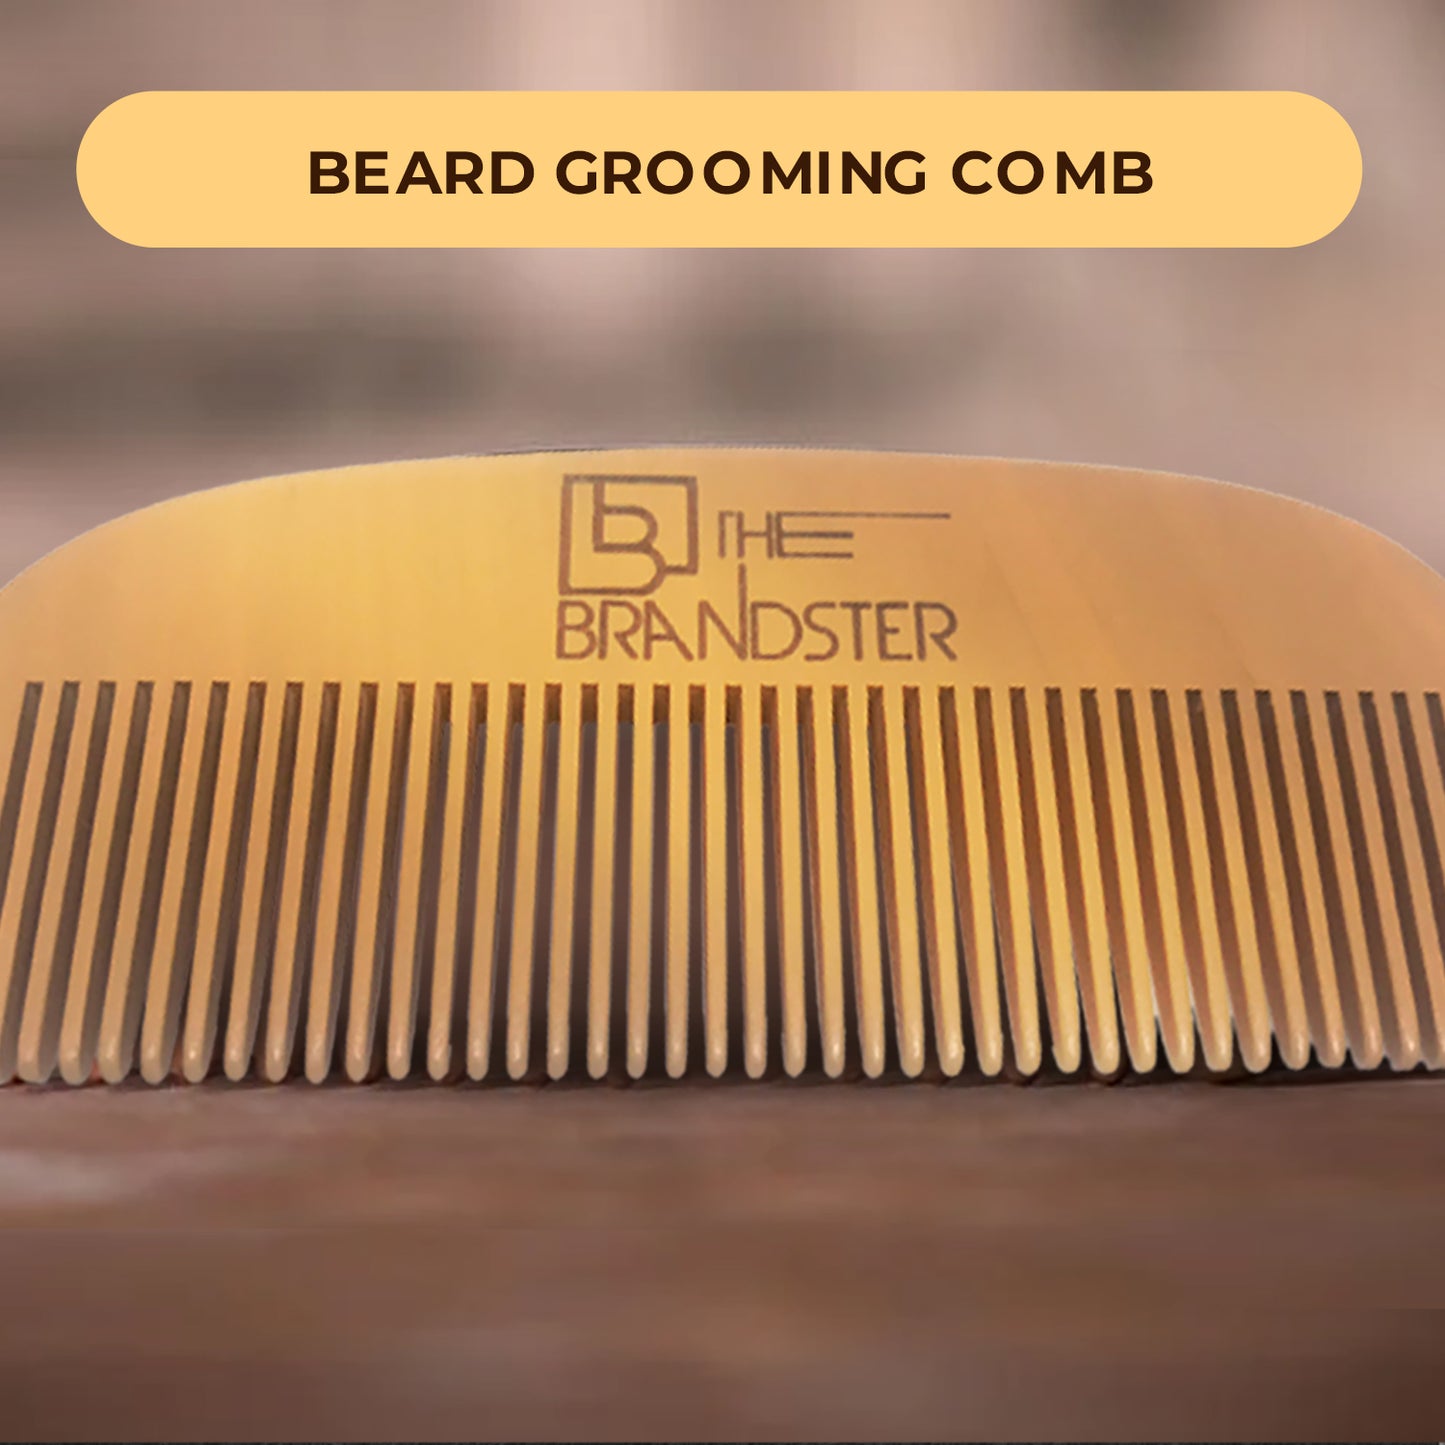 4 in 1 Beard Care Kit for Men, Beard Grooming, Styling Set